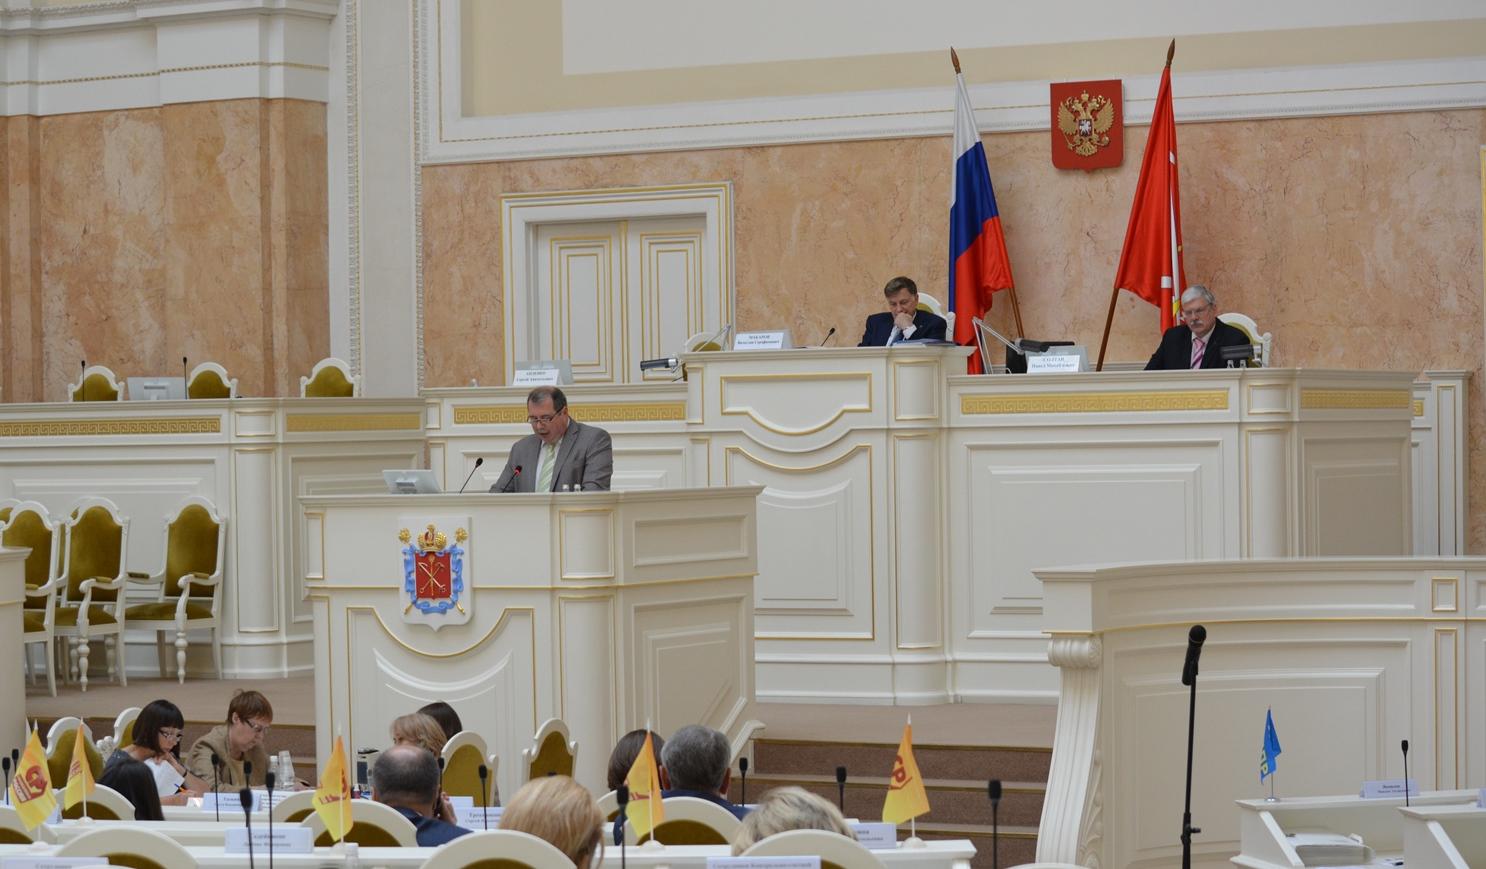 Контрольно-счетная палата Санкт-Петербурга провела внешнюю проверку годовой отчетности главных администраторов средств бюджета города за 2015 год